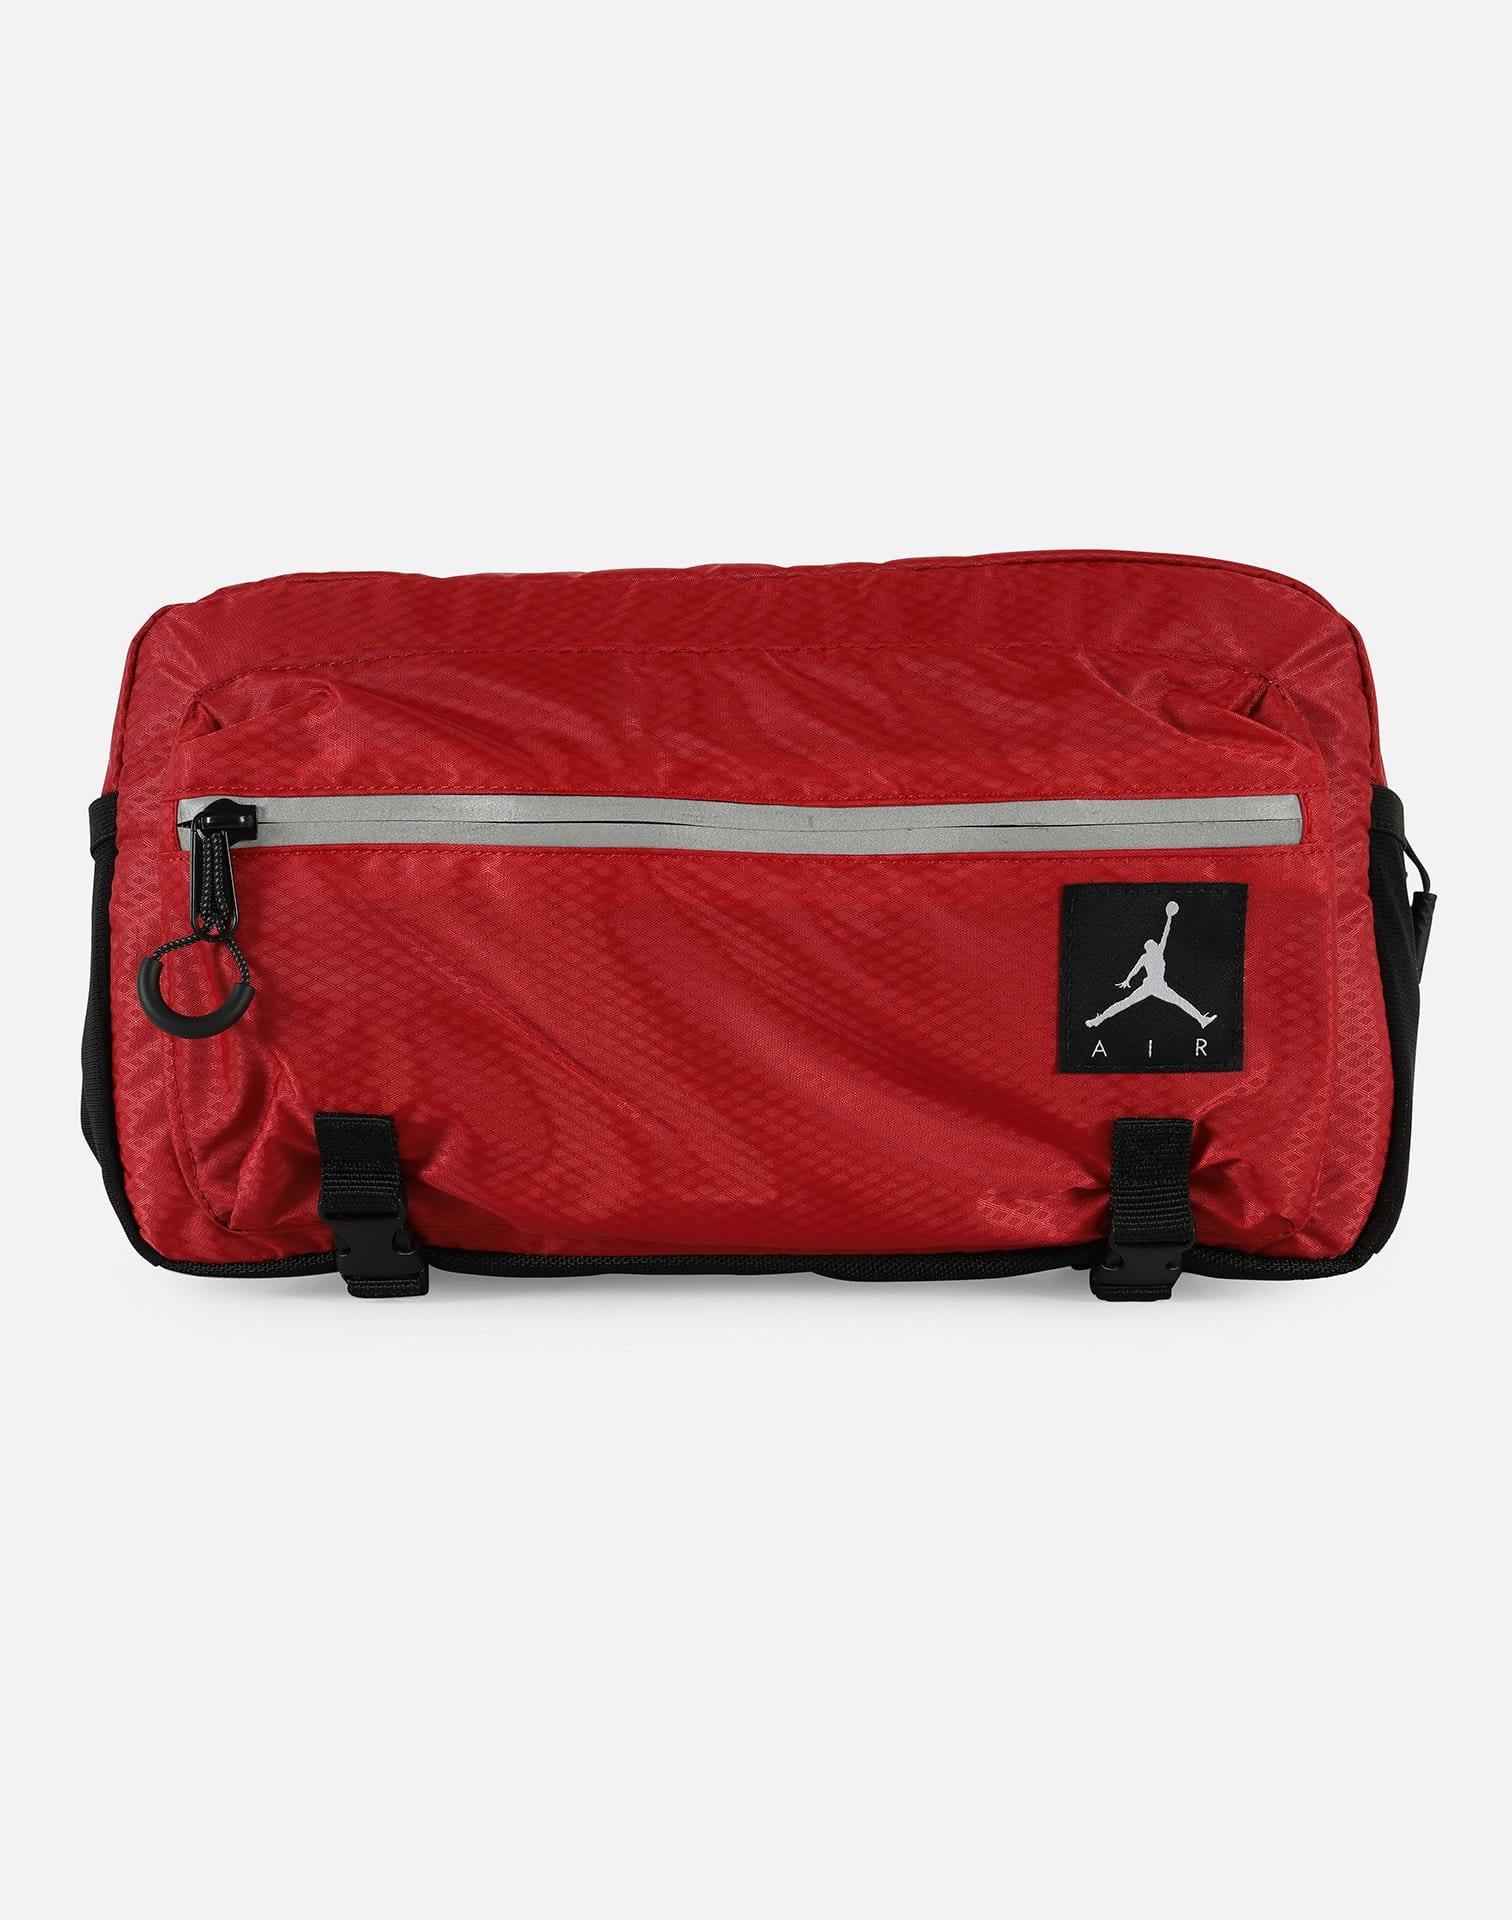 Jordan Jumpman Air Crossbody Bag